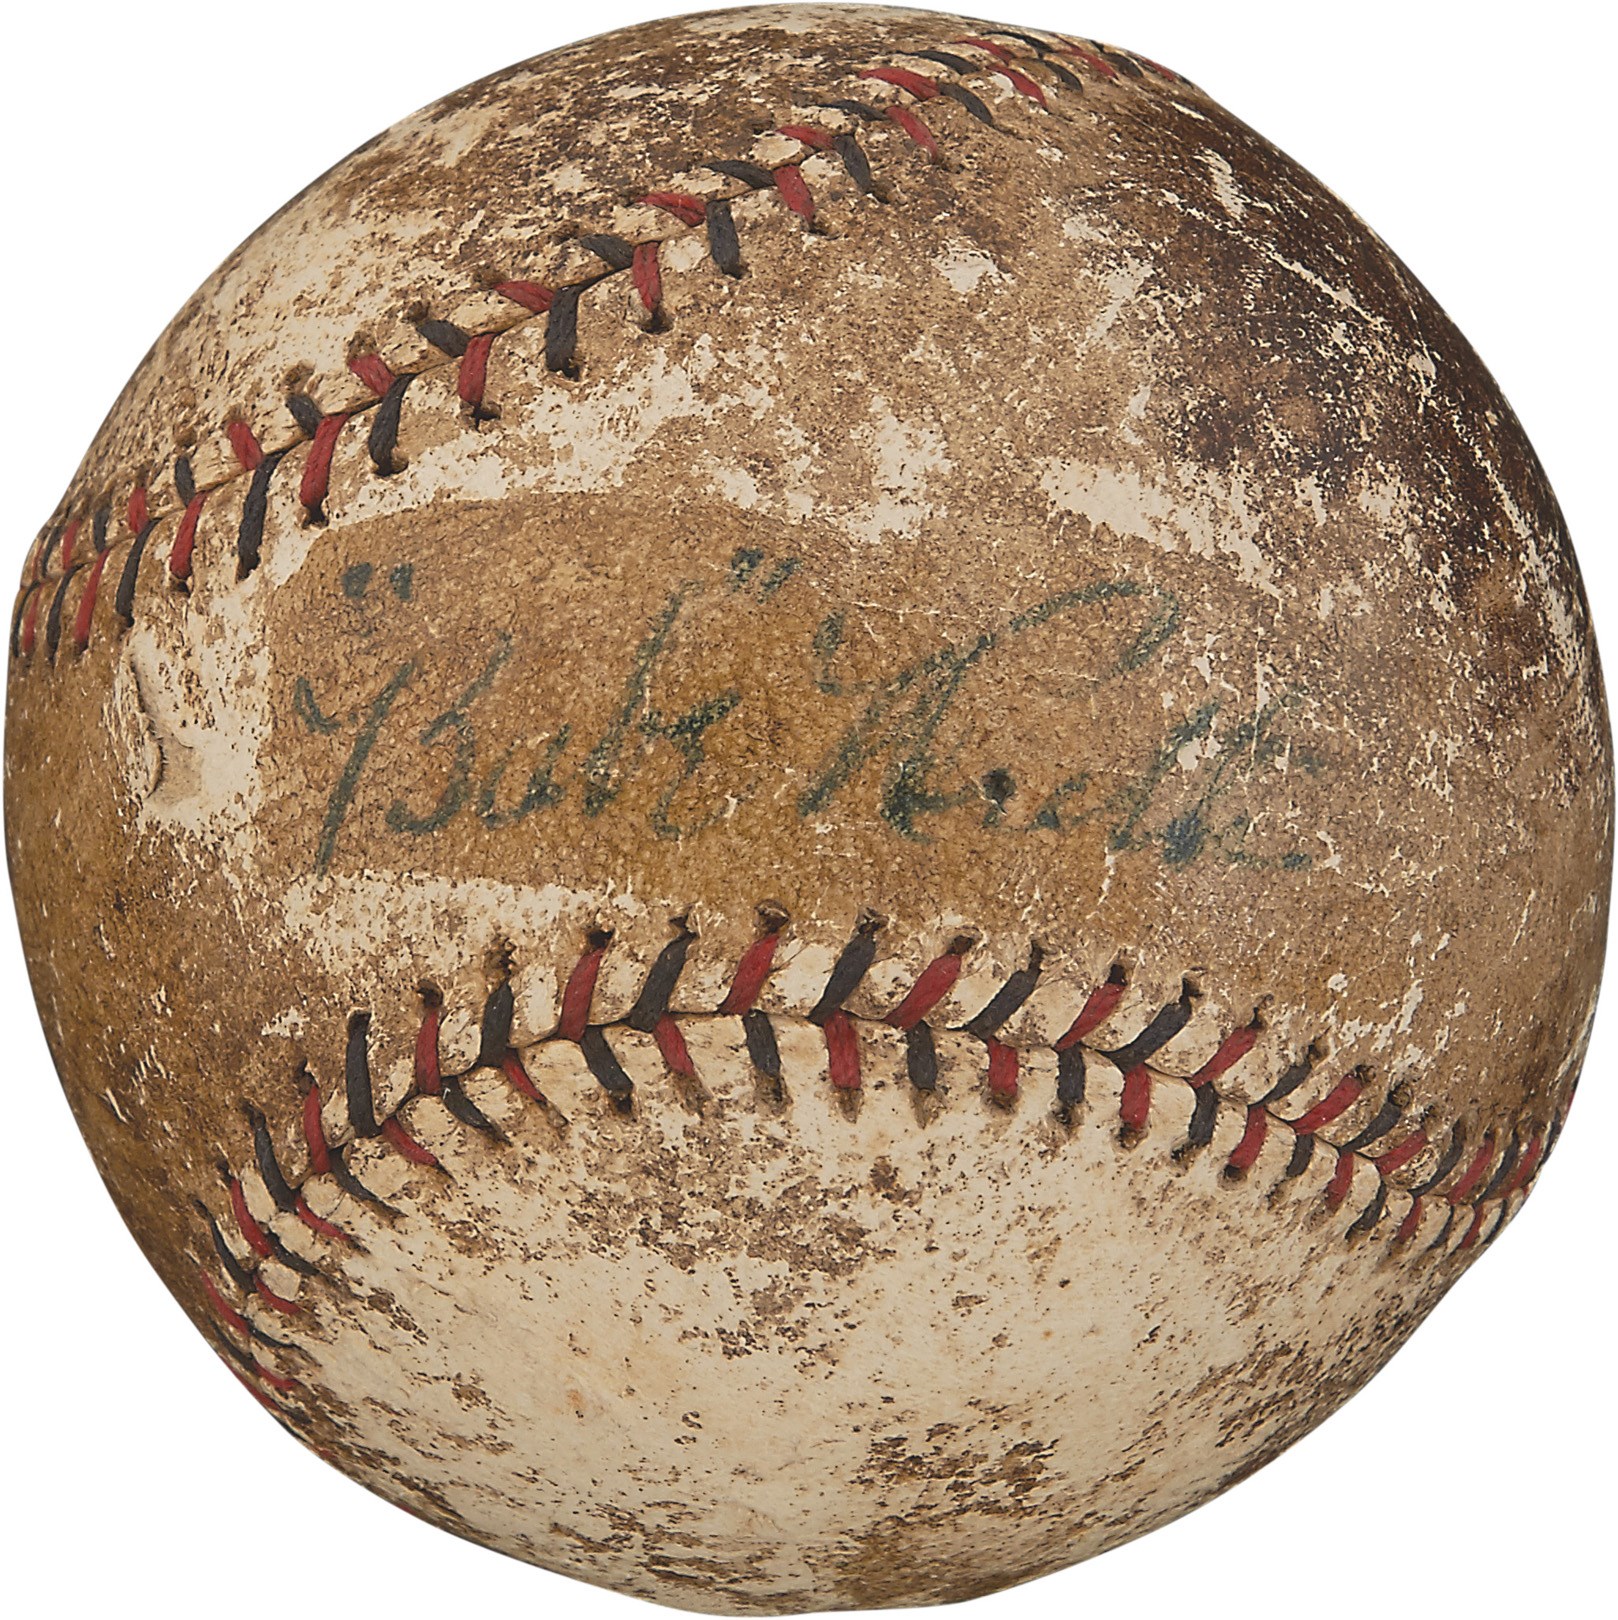 Ruth and Gehrig - Circa 1920 Babe Ruth Single-Signed Baseball (PSA)